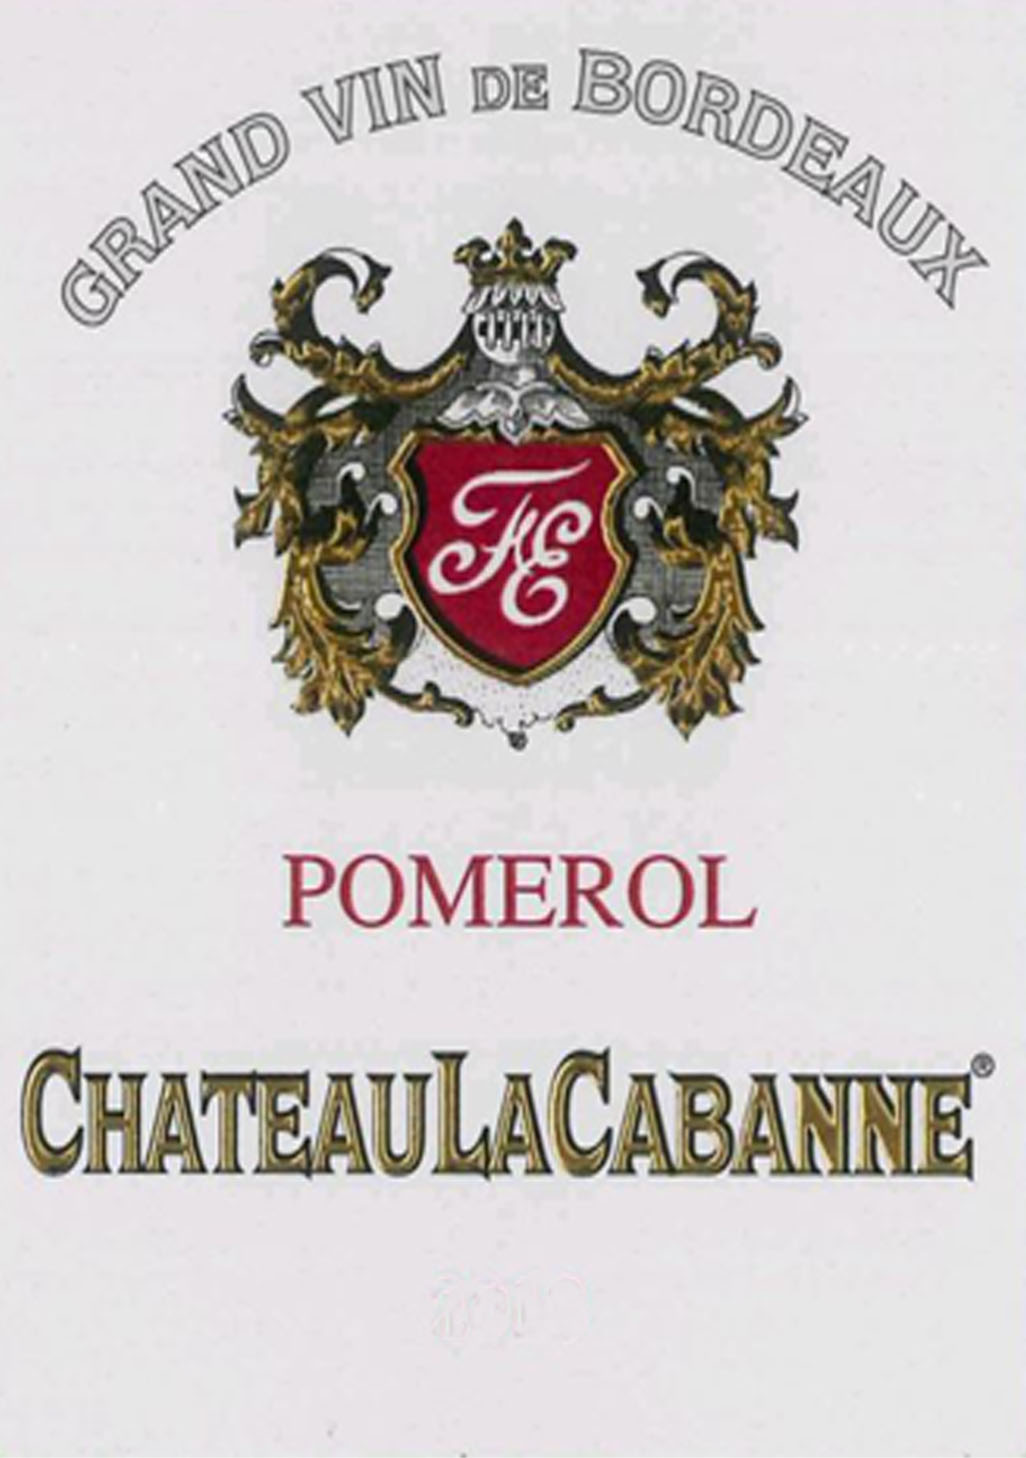 Chateau La Cabanne label